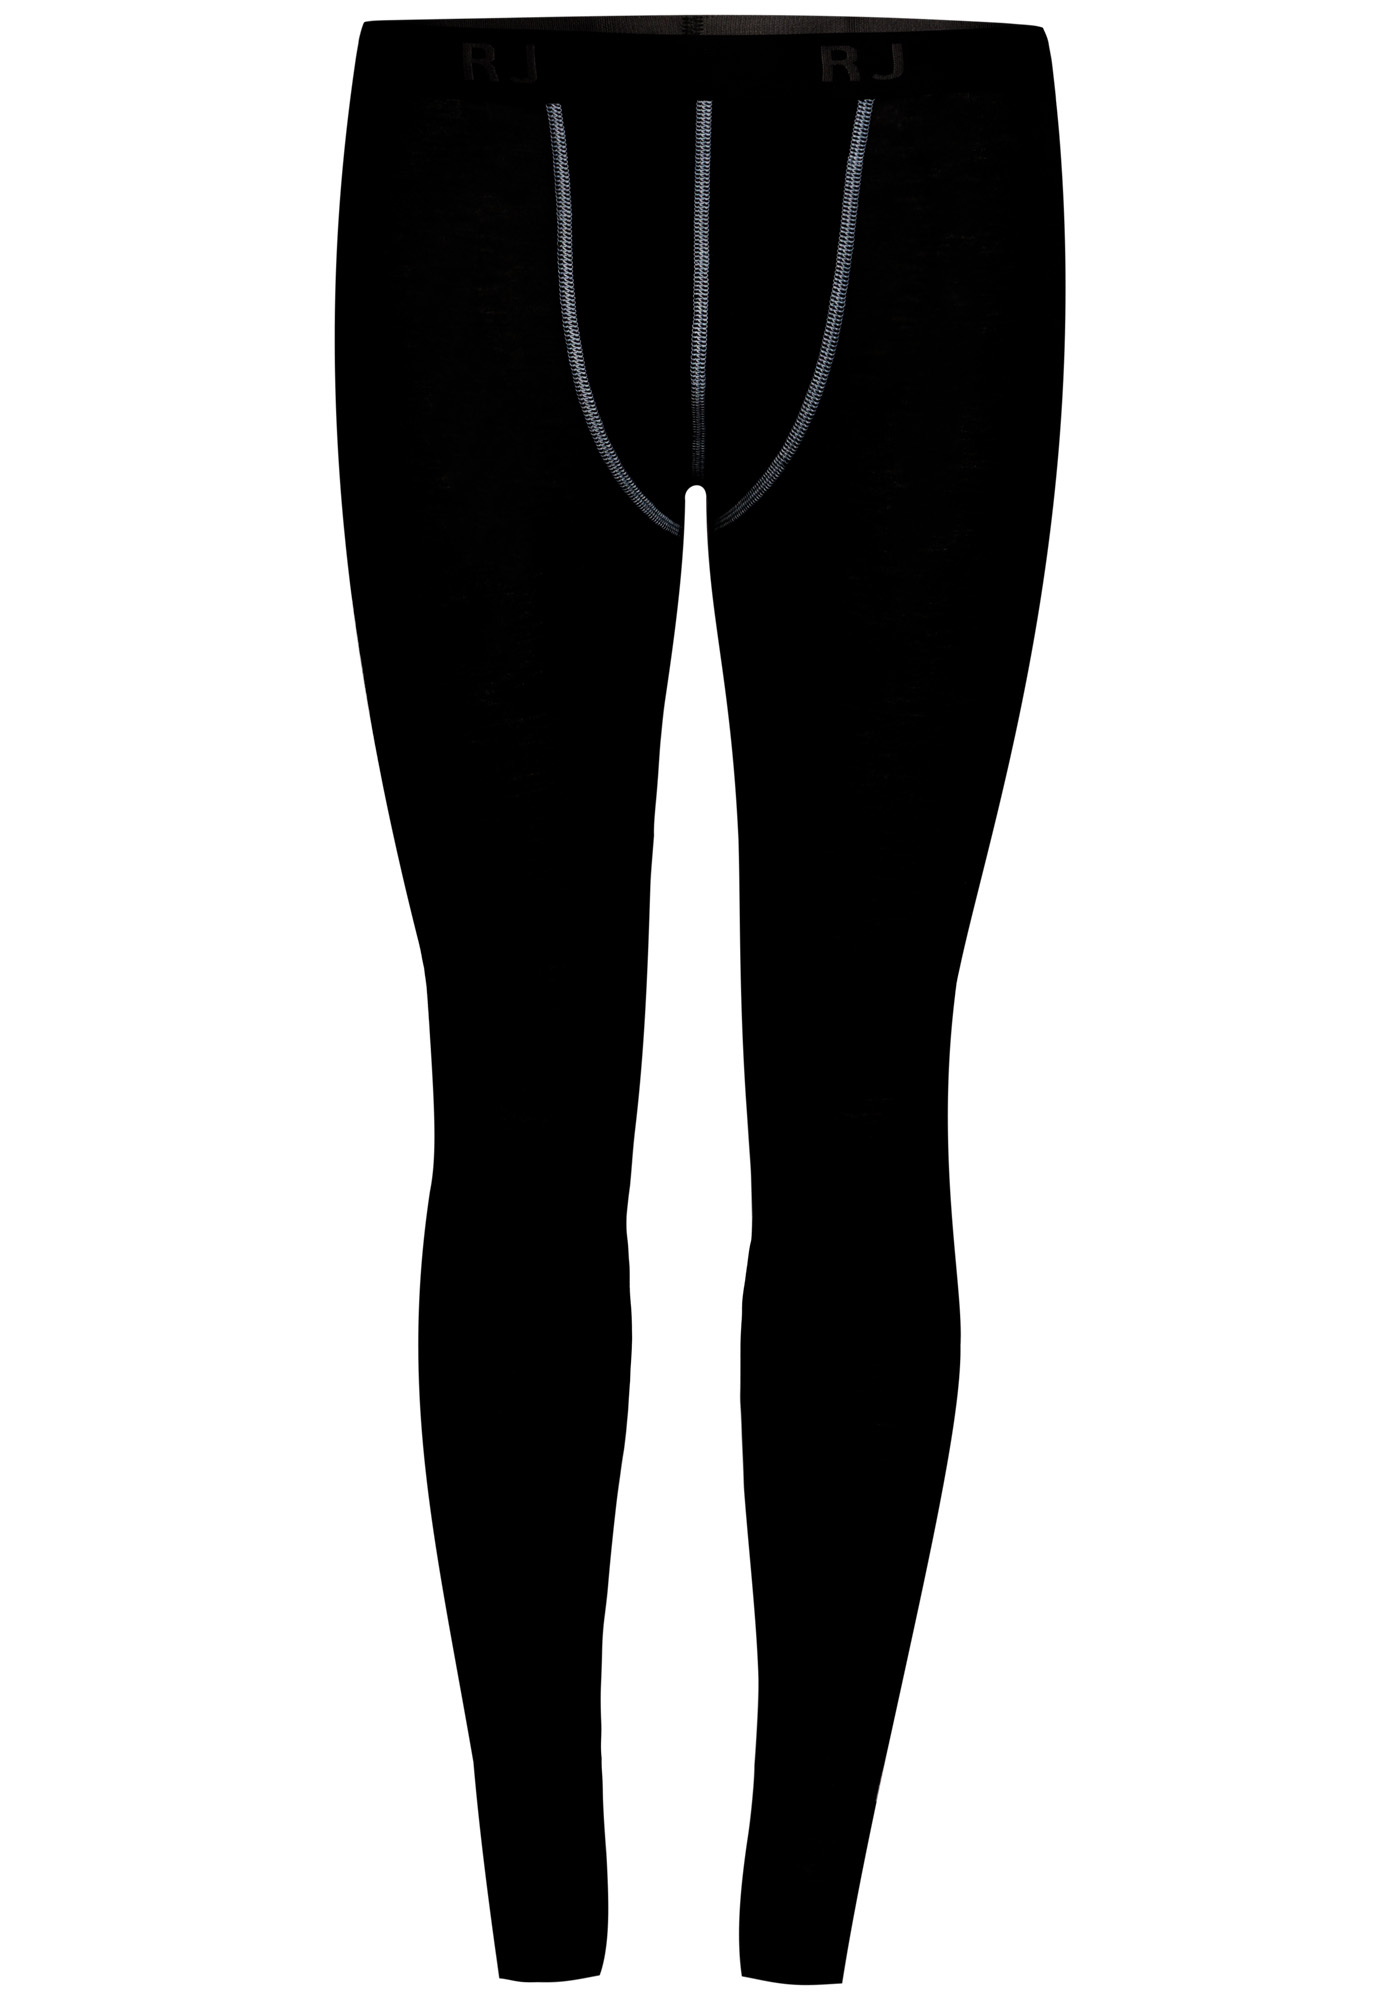 RJ Bodywear Thermo Cool lange broek (1-pack), temperatuur regulerende broek heren lang, zwart